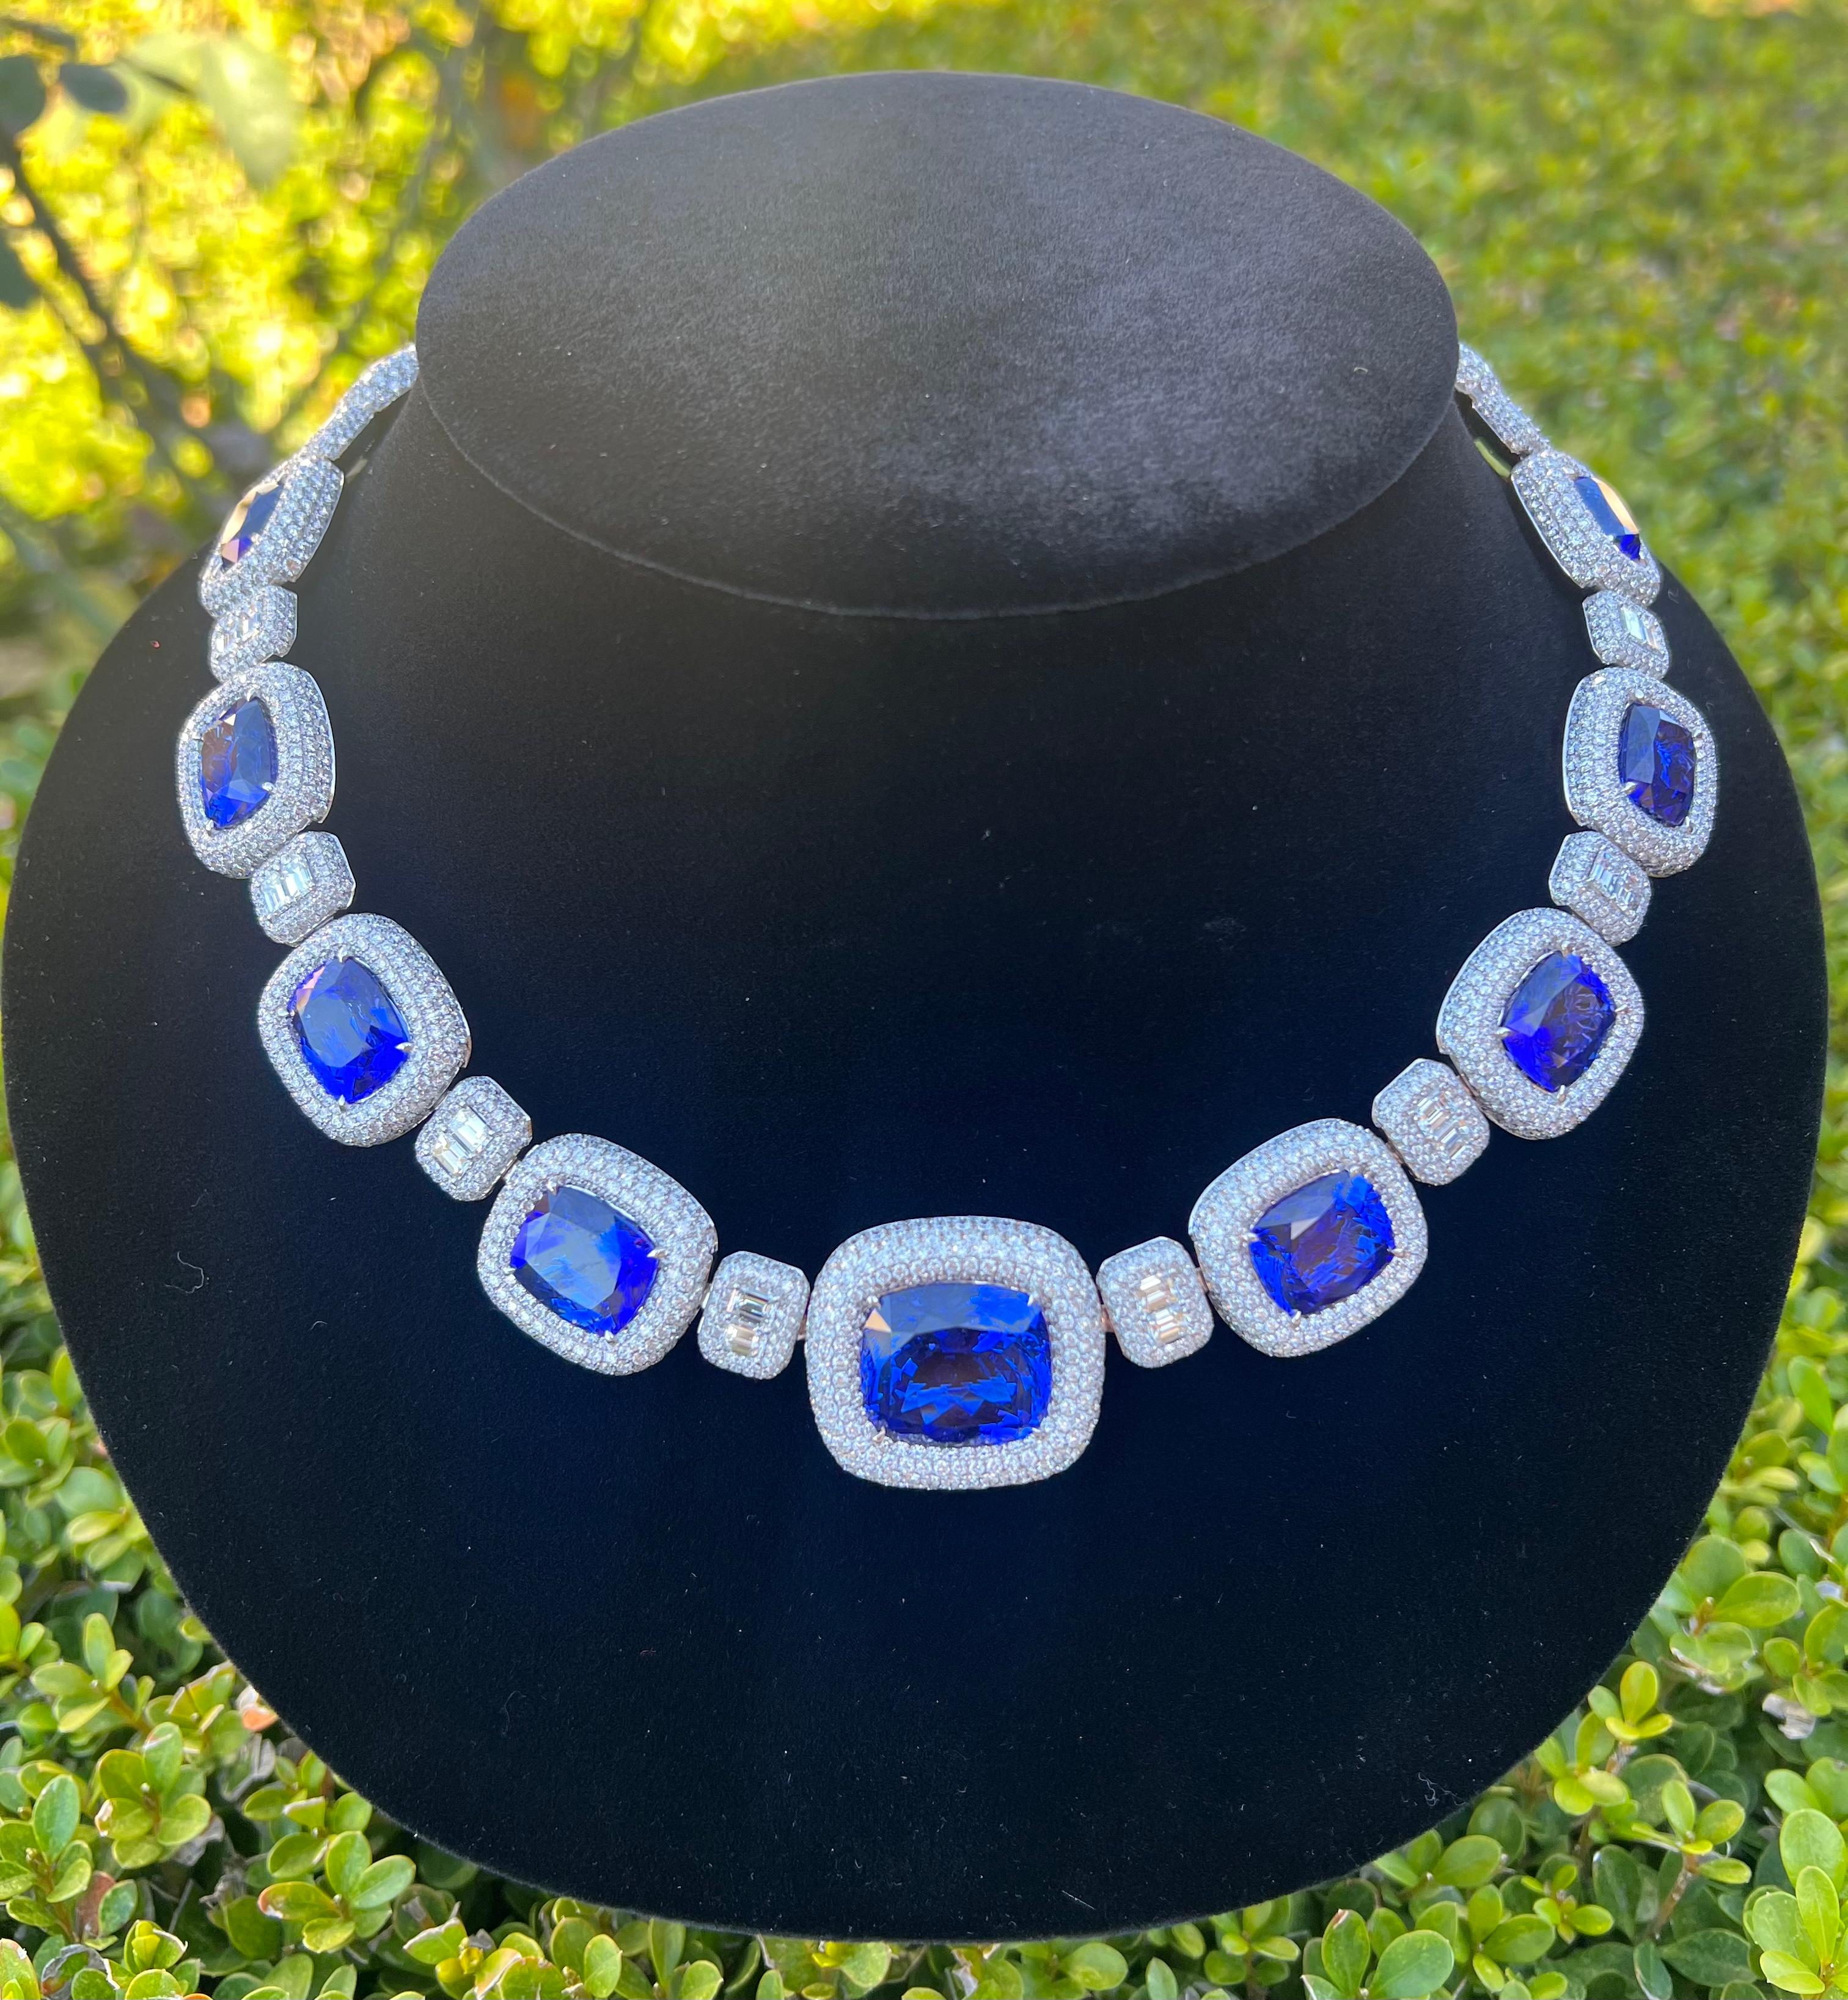 Opulent 211 Carat AAAA Intense Blue Tanzanite and Diamond 18 Karat Gold Necklace 8